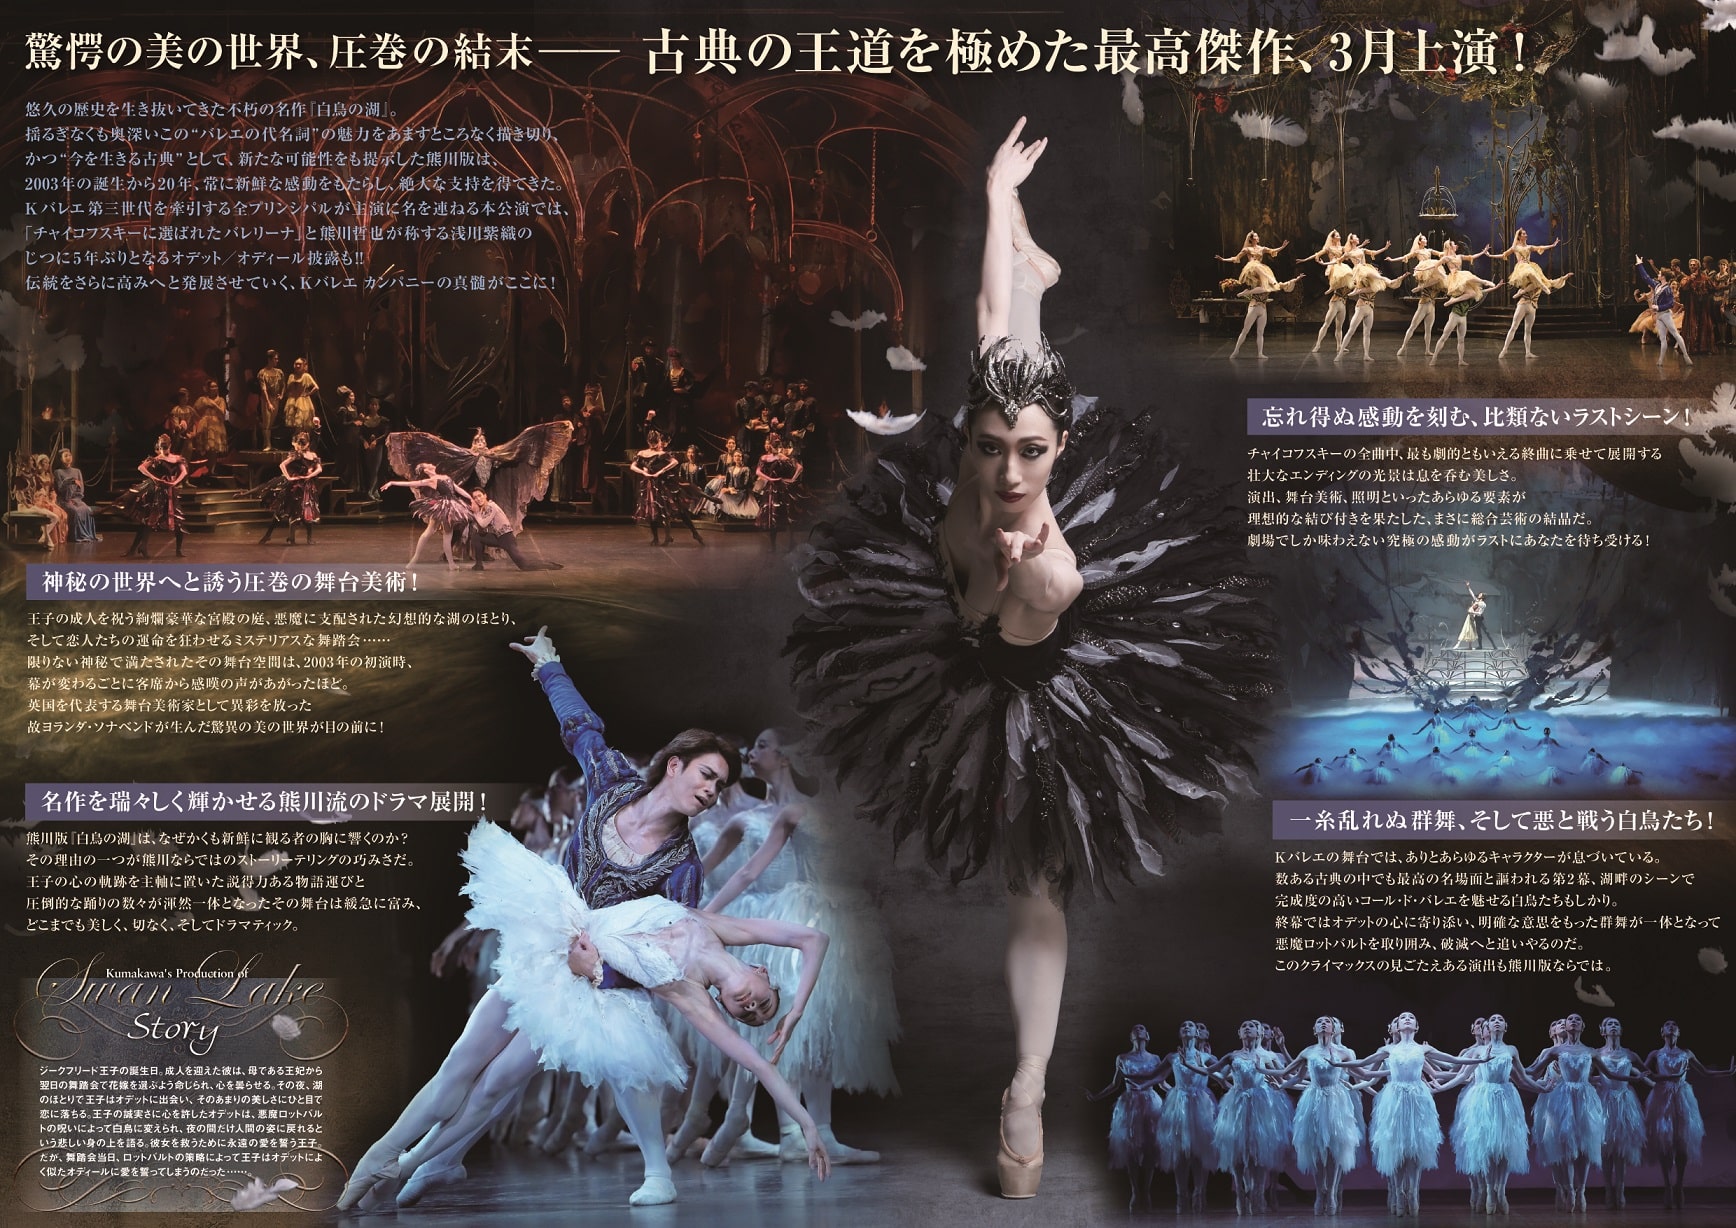 熊川哲也 DVD 4枚組 ballet arts - アート、エンターテインメント